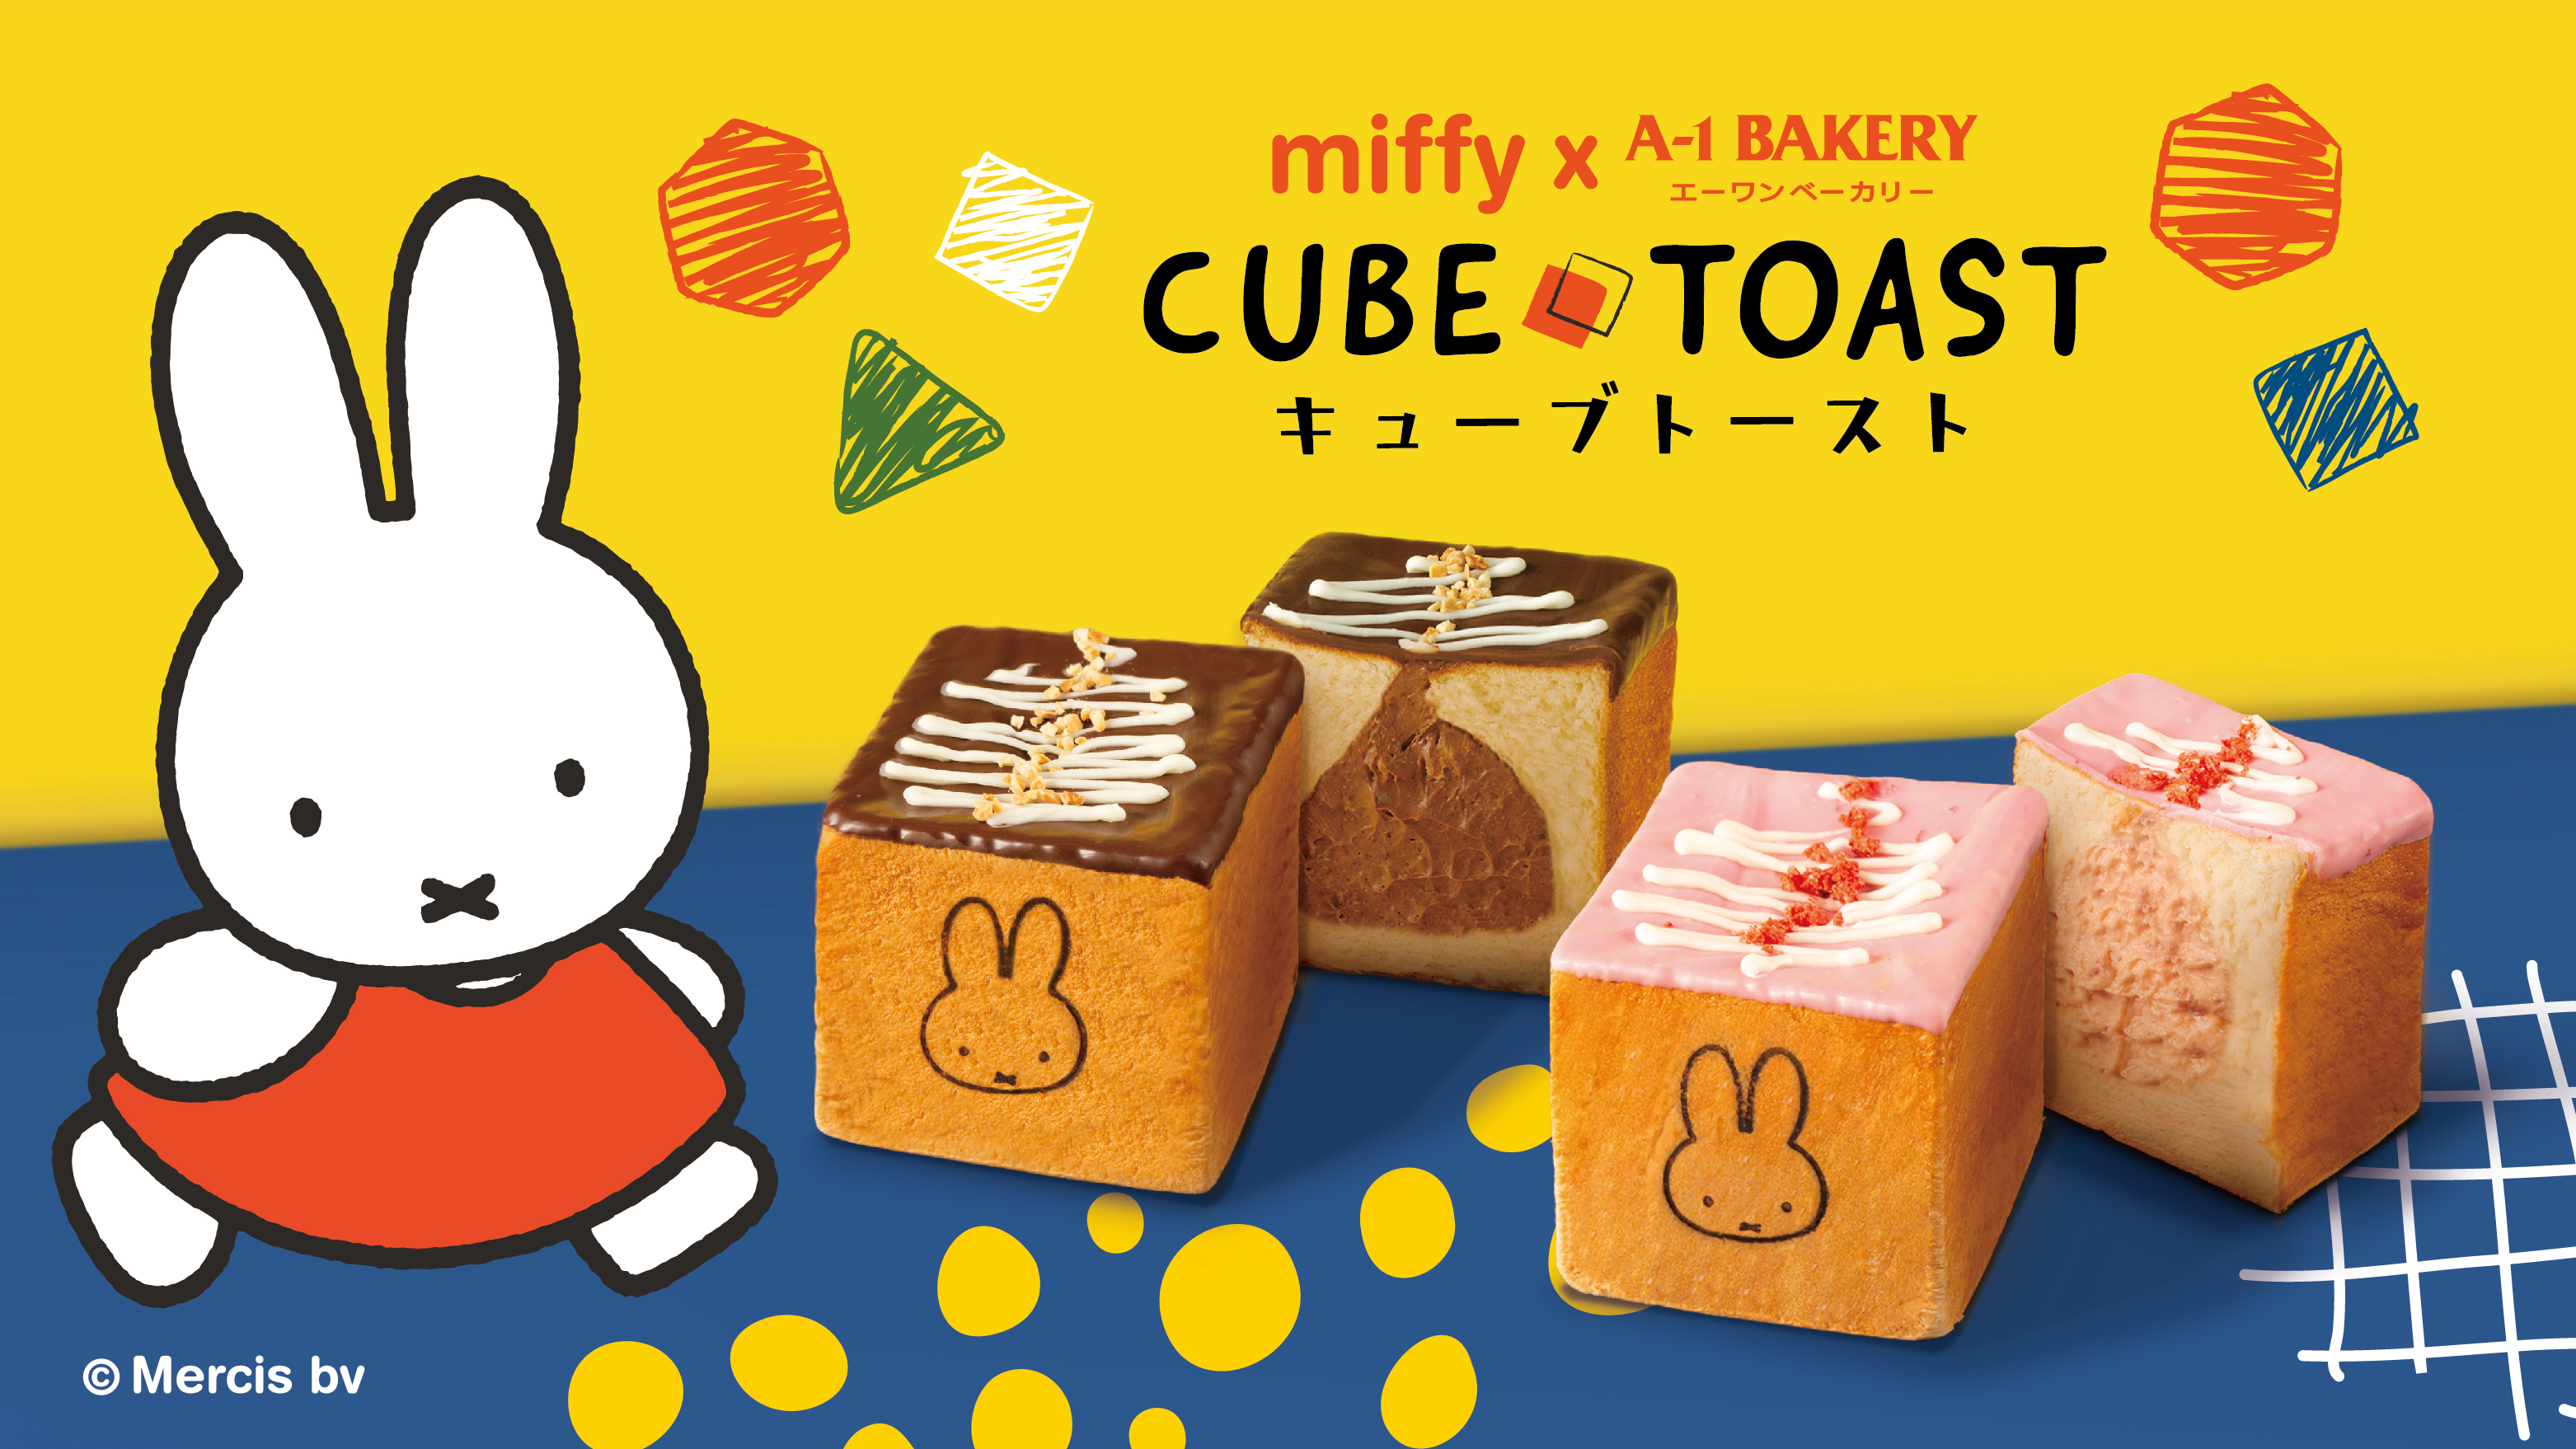 【期間限定】 A-1 Bakery x ミッフィー launched Cube Toast for the first time! Two classic flavors available in all stores and online stores from June 16